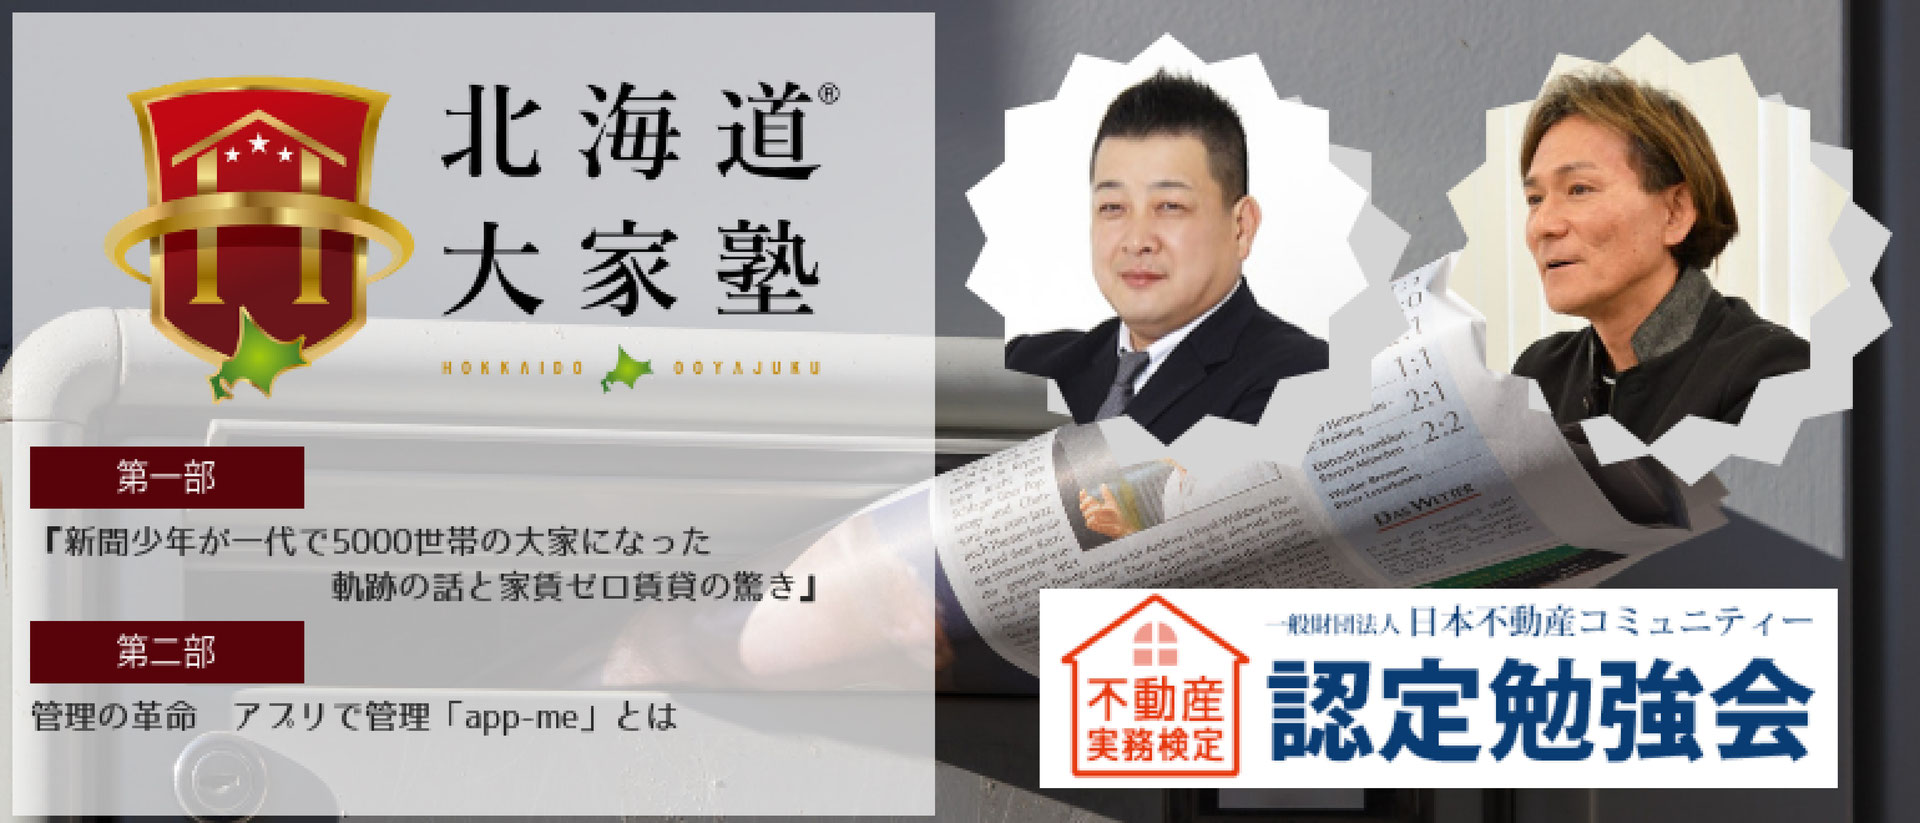 の トランプ 姫路 「家賃ゼロ賃貸」構想が日本の常識を変える